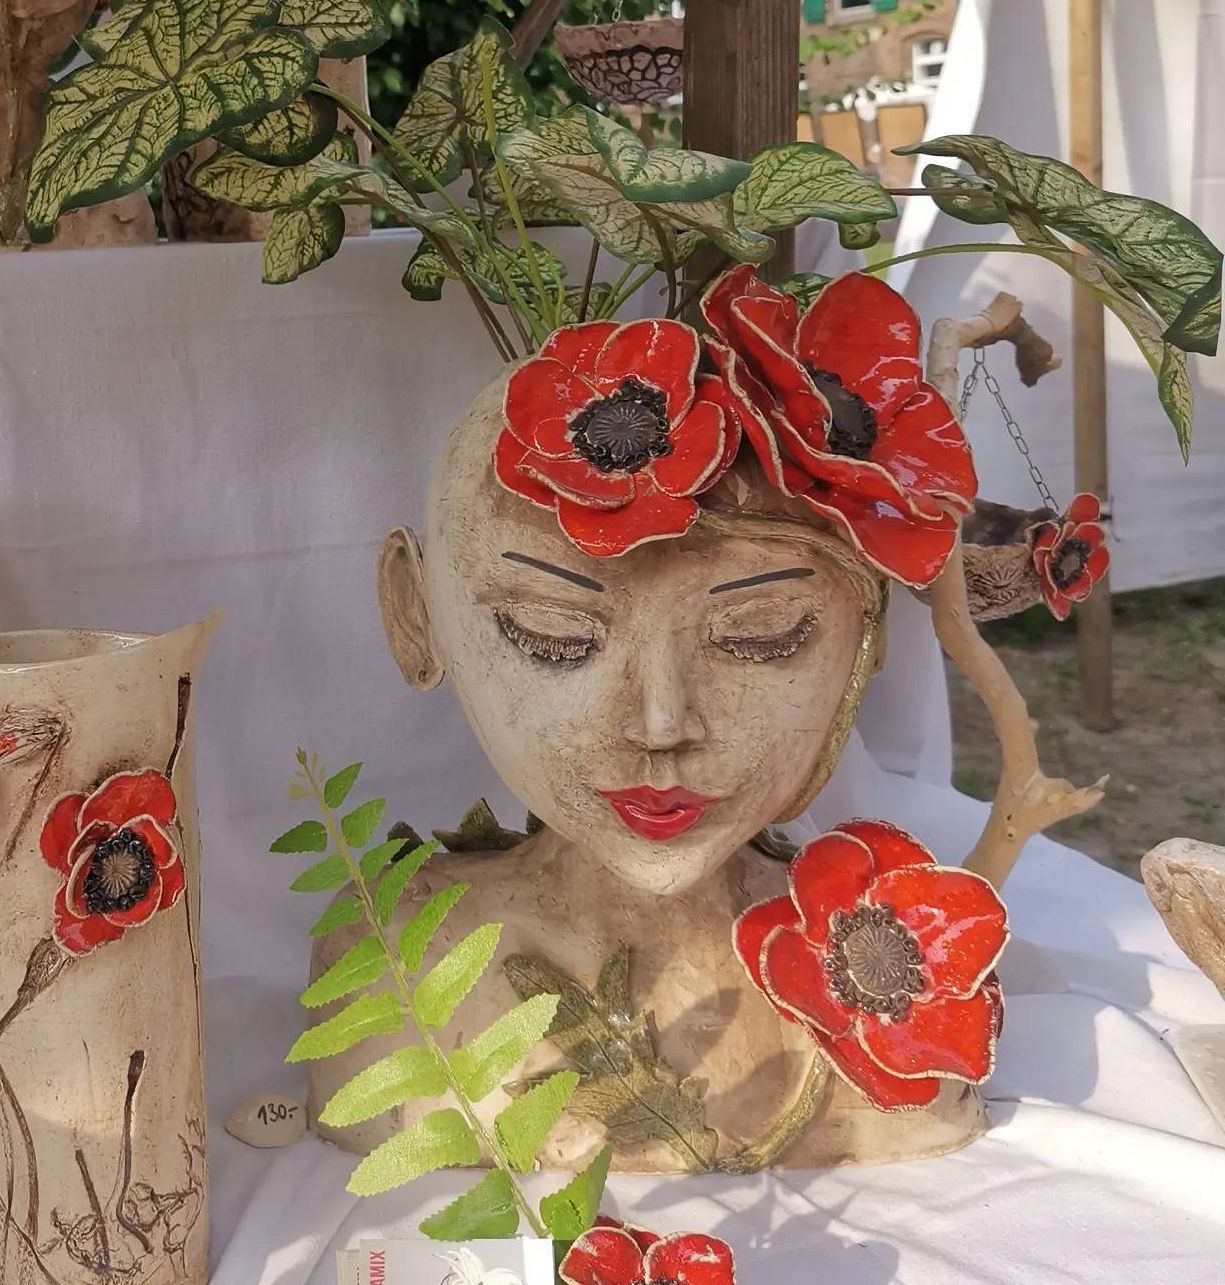 Martina Heinl bezeichnet diese Pflanztöpfe und Vasen als Mohnblütenkeramik. Mohnblüten kleben an der Vase und als Kopfschmuck an dem breiten, hübschen Gesicht eines Mädchens aus Keramik.